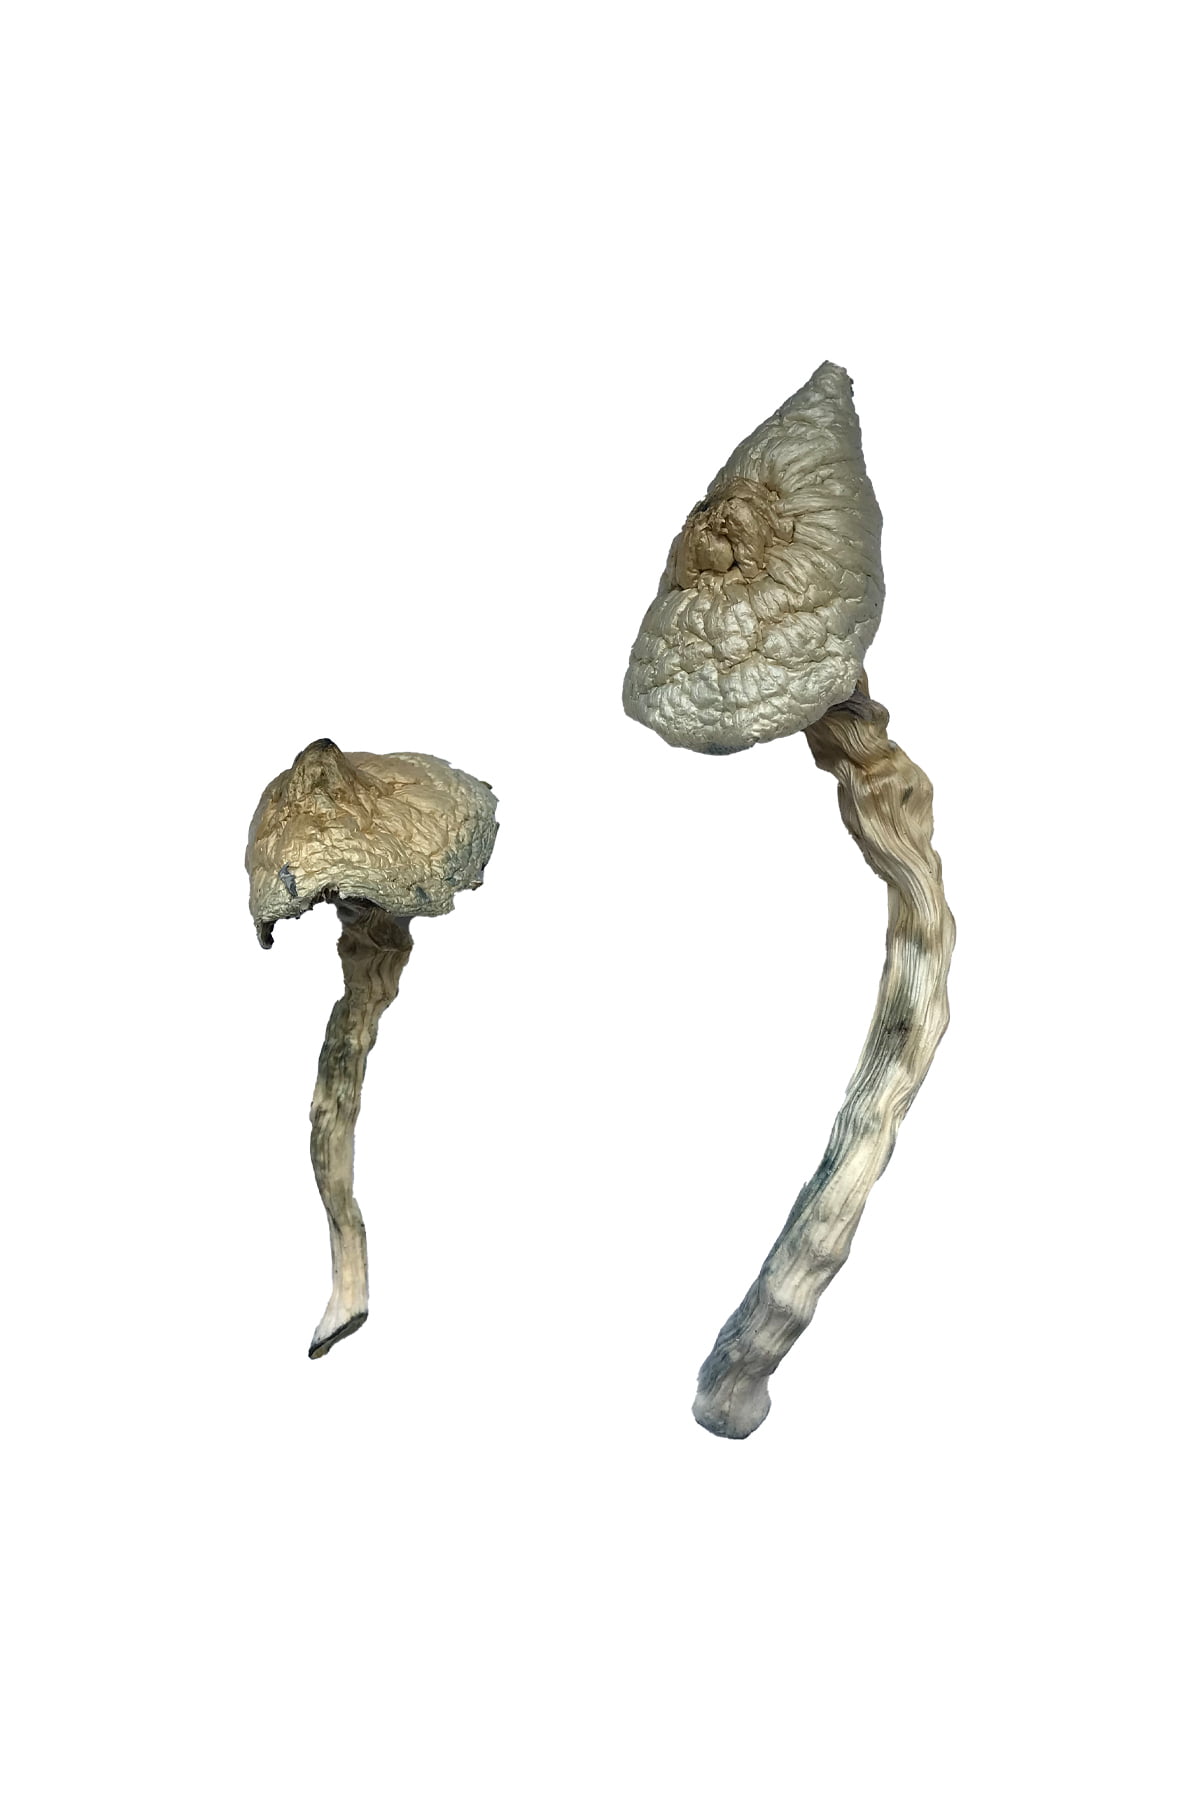 Buy Great White Monster Magic Mushrooms Online